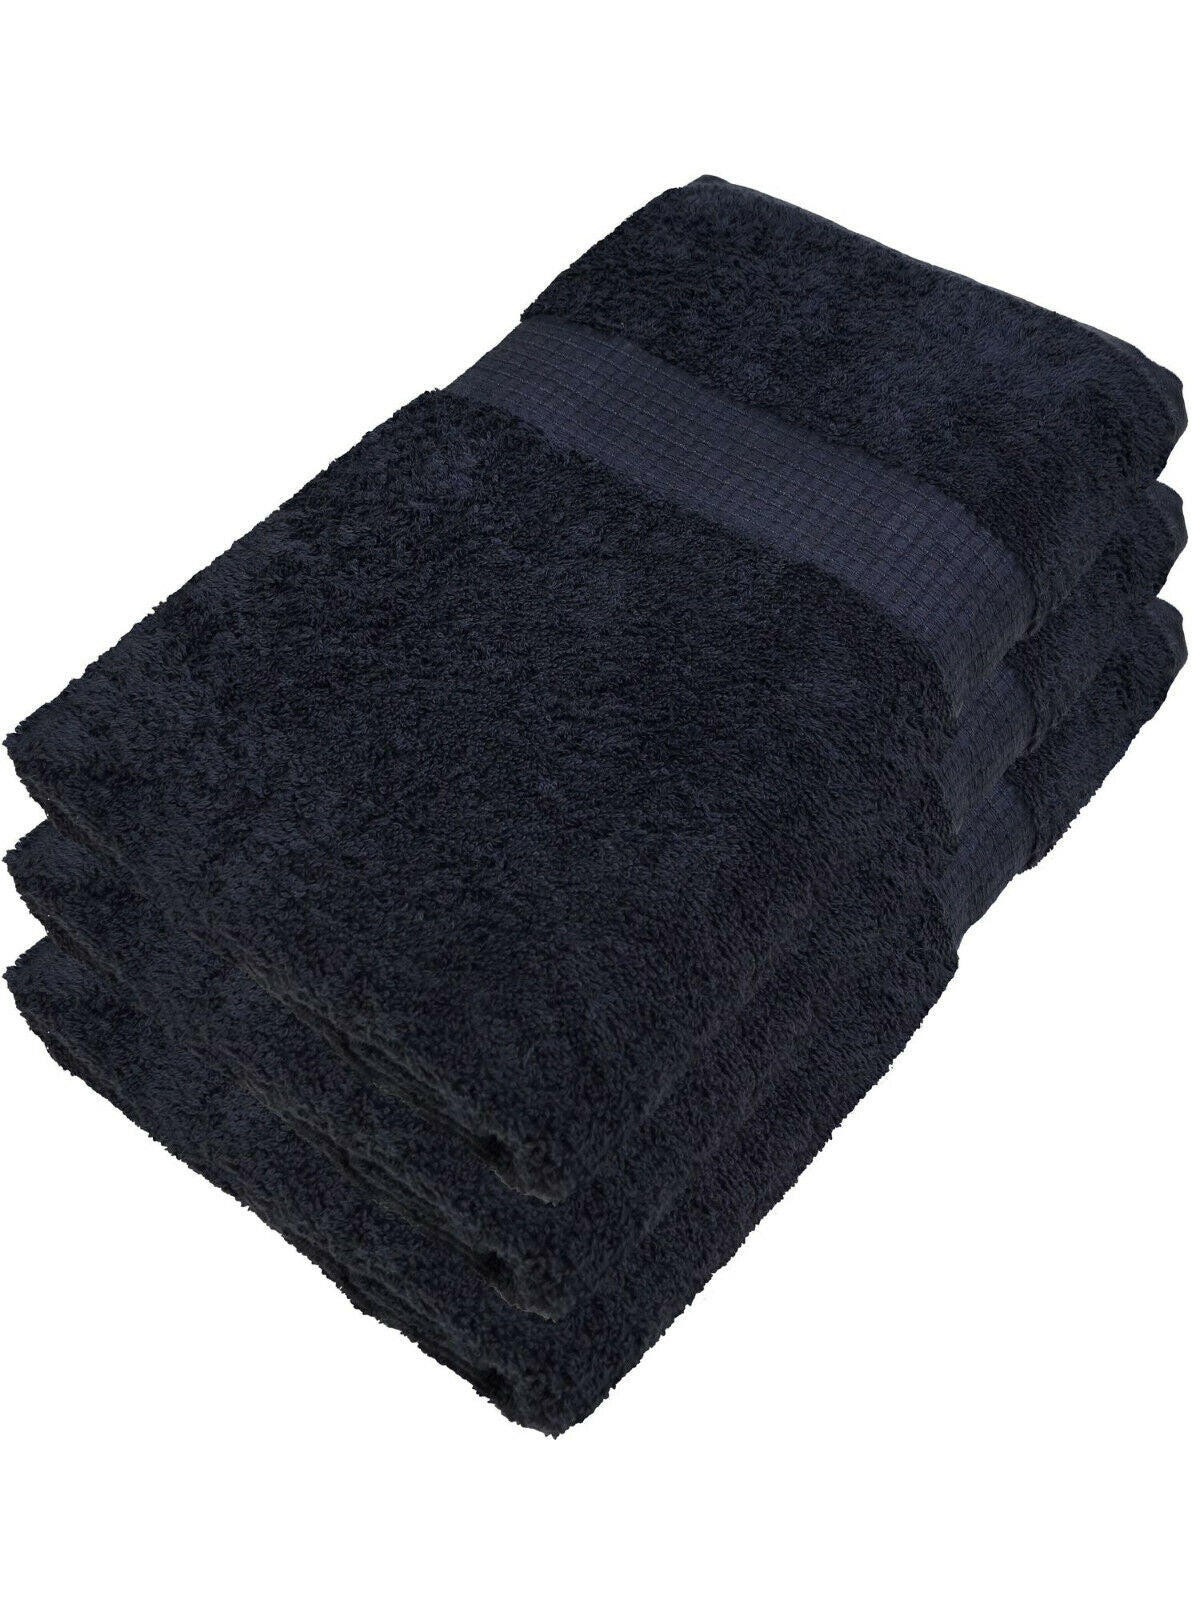 Handtuch Duschhandtuch Saunatuch Saugstark Kuschelig 100% Baumwolle